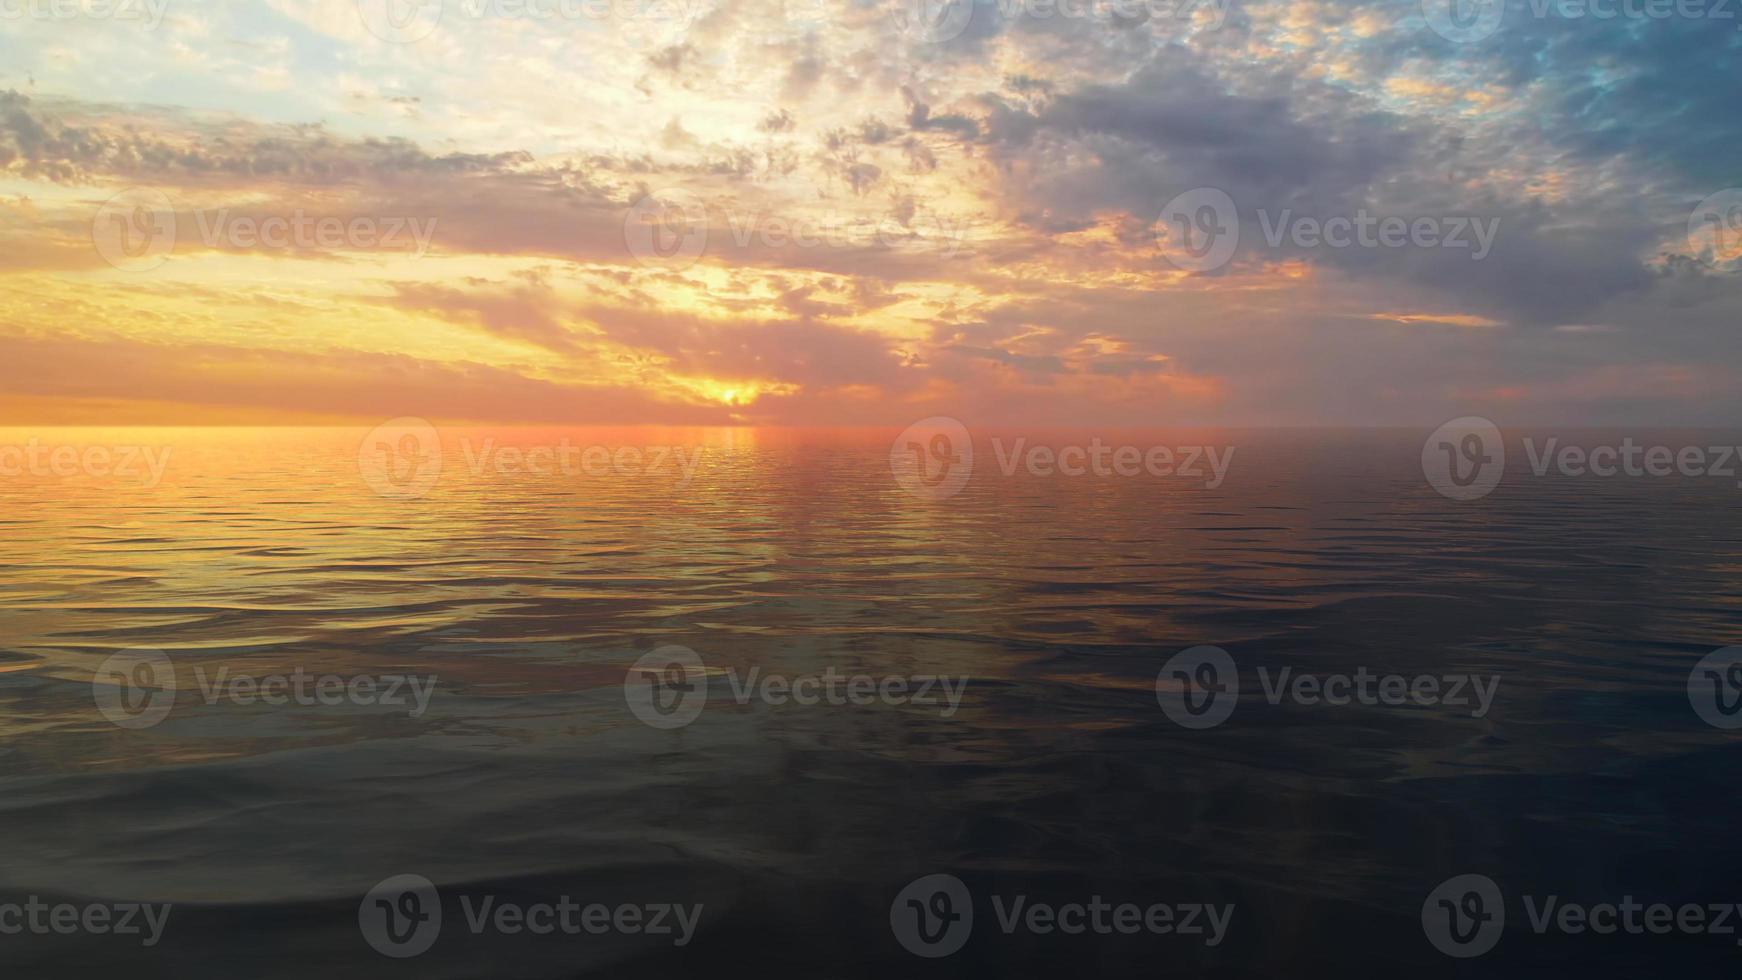 Schöner Hintergrundbild 1742x980. Schöner Hintergrund Mit Sonnenuntergang über Dem Meer 4742070 Stock Photo Bei Vecteezy